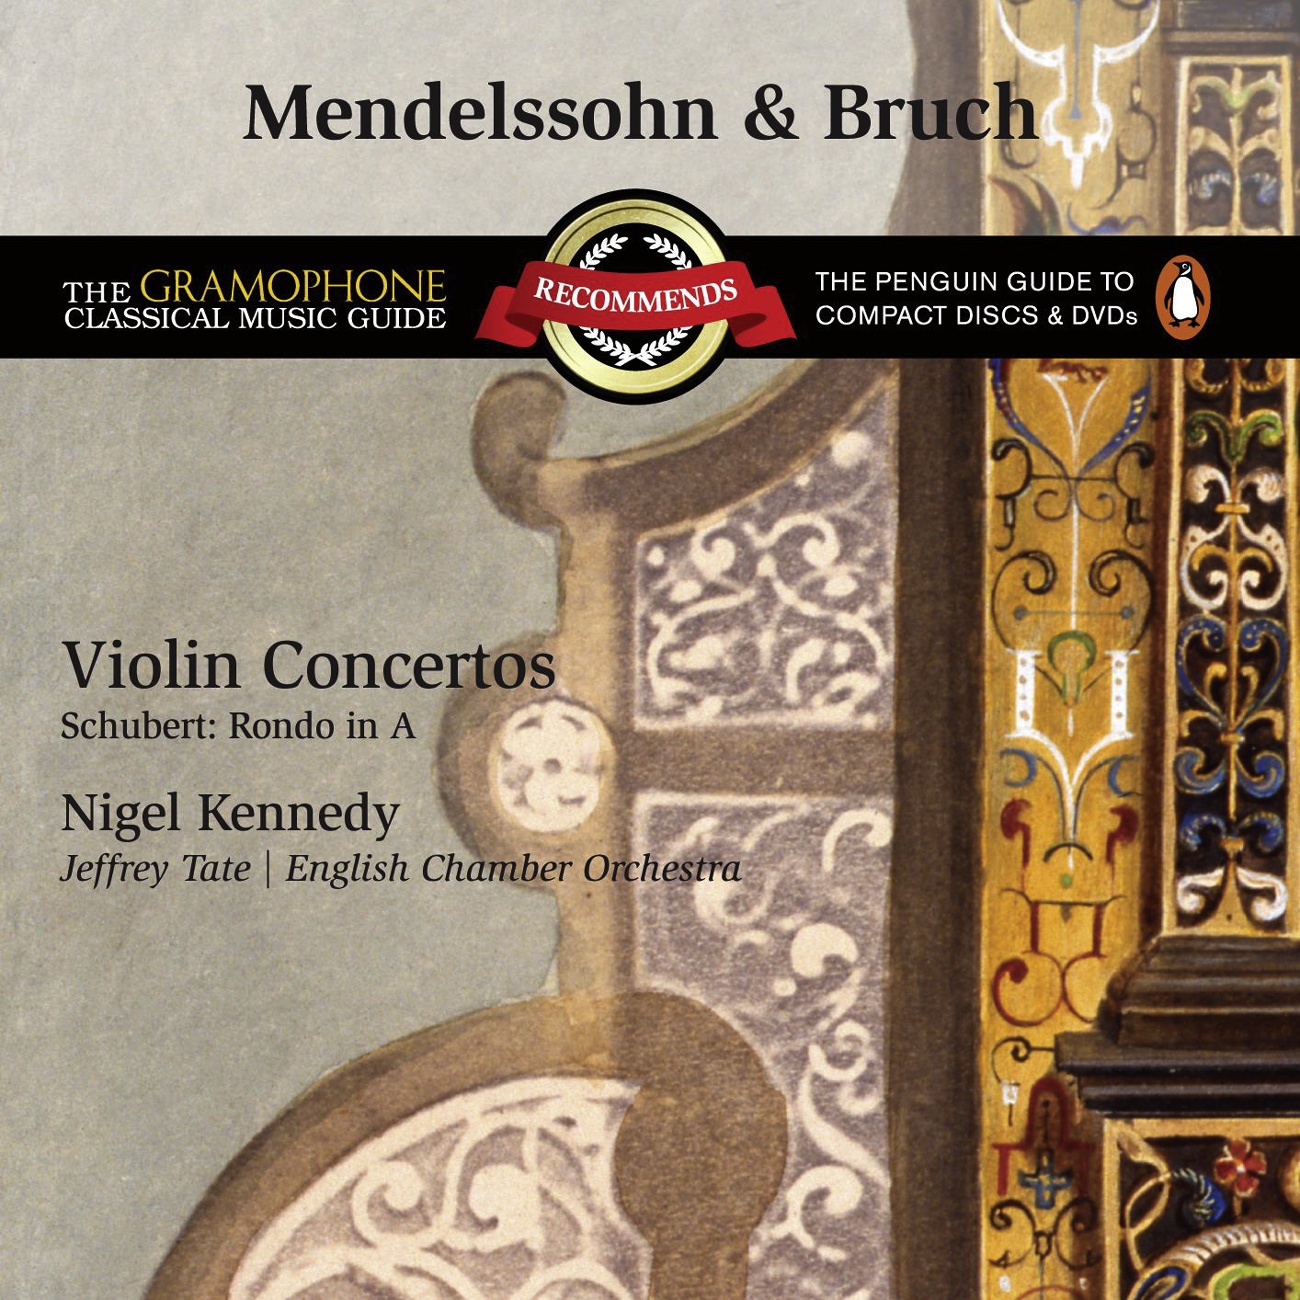 Violin Concerto in E minor Op. 64: III.  Allegretto non troppo - Allegro molto vivace